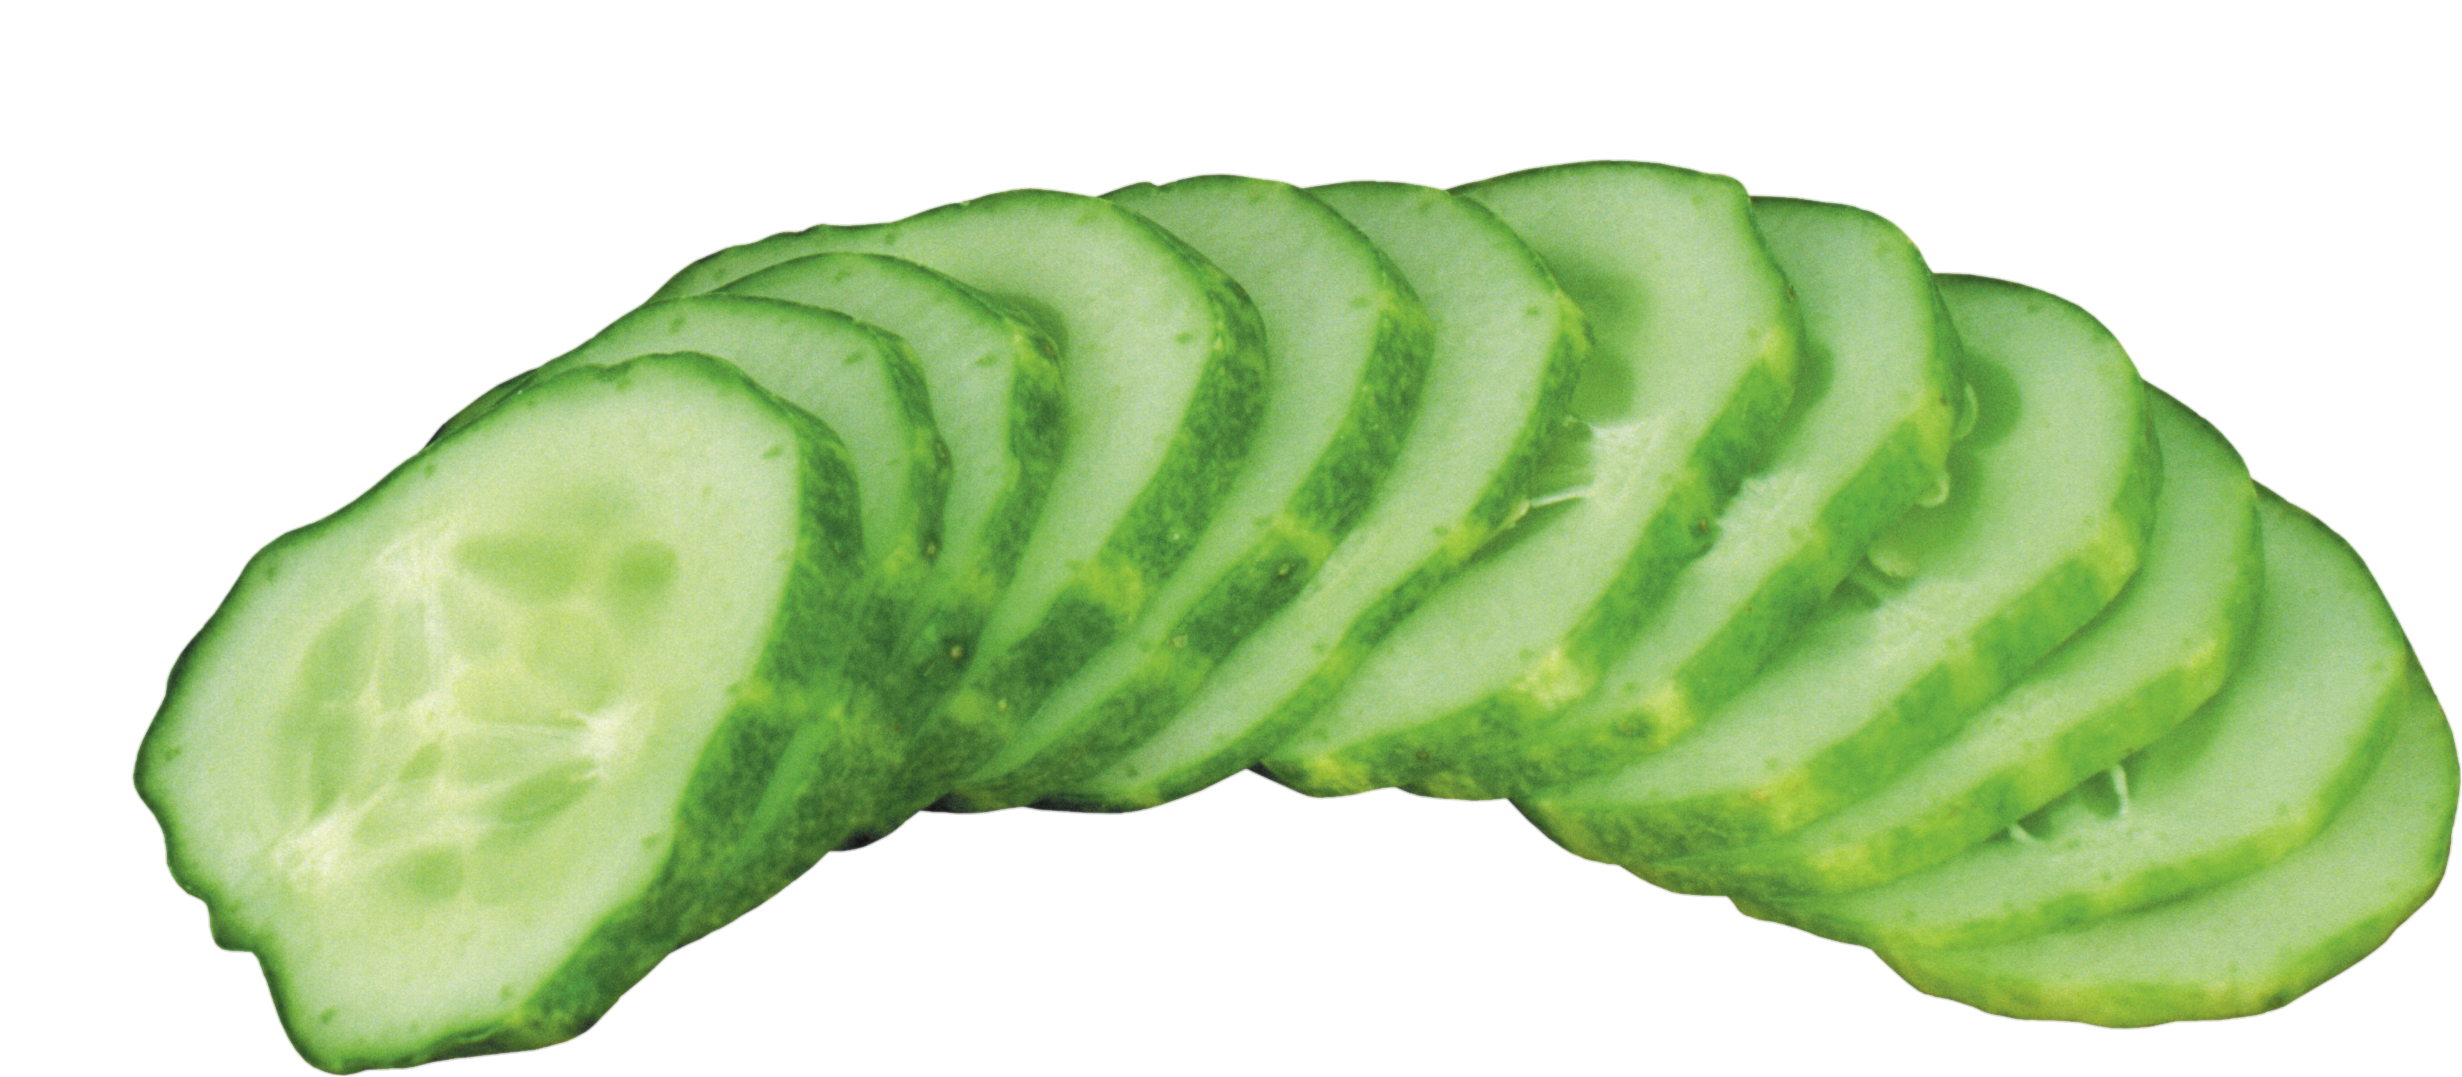 Cucumber-24-1